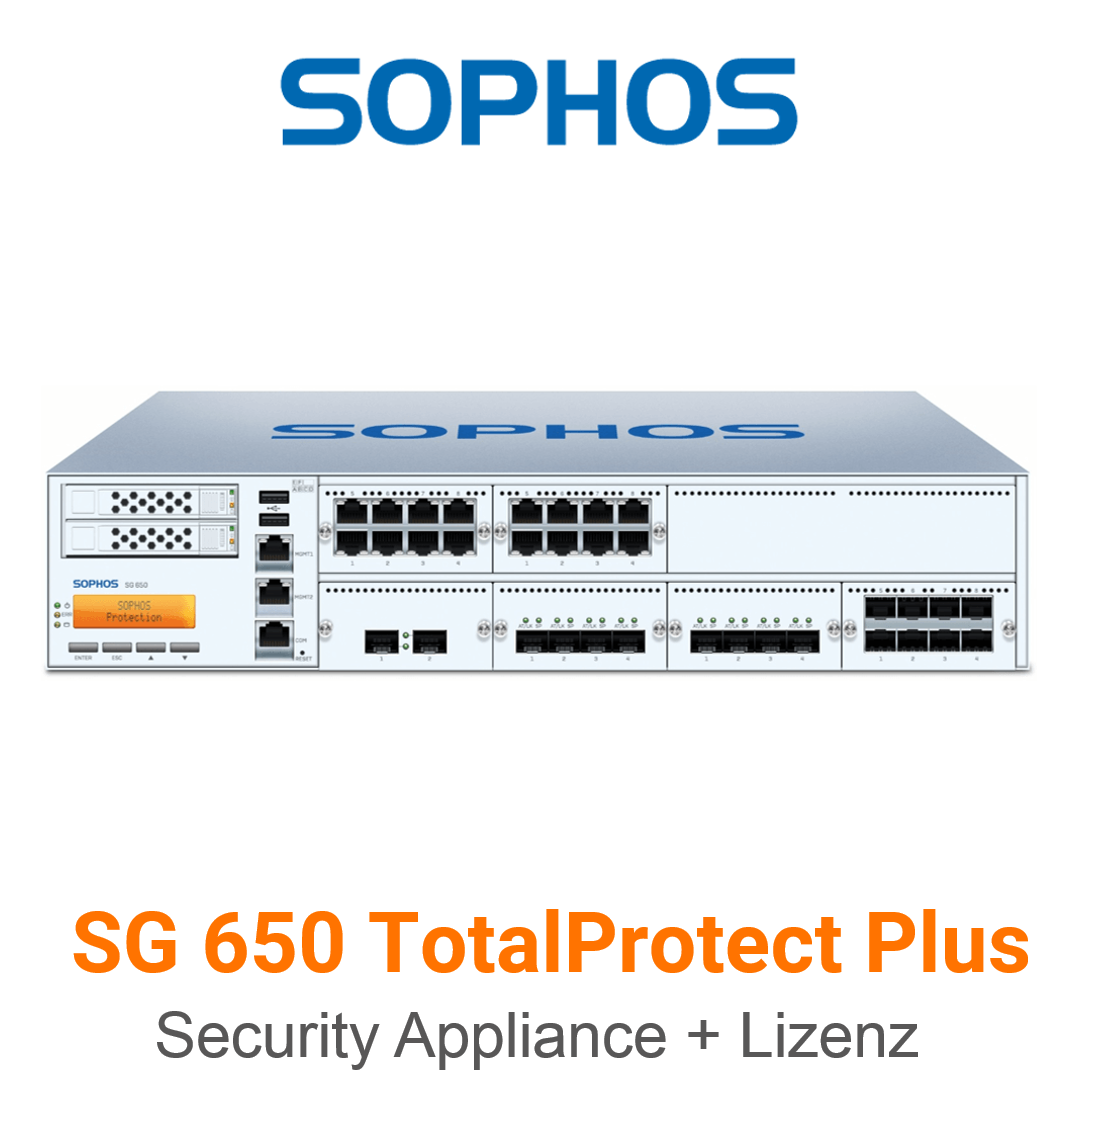 Sophos SG 650 TotalProtect Plus Bundle (Hardware + Lizenz)